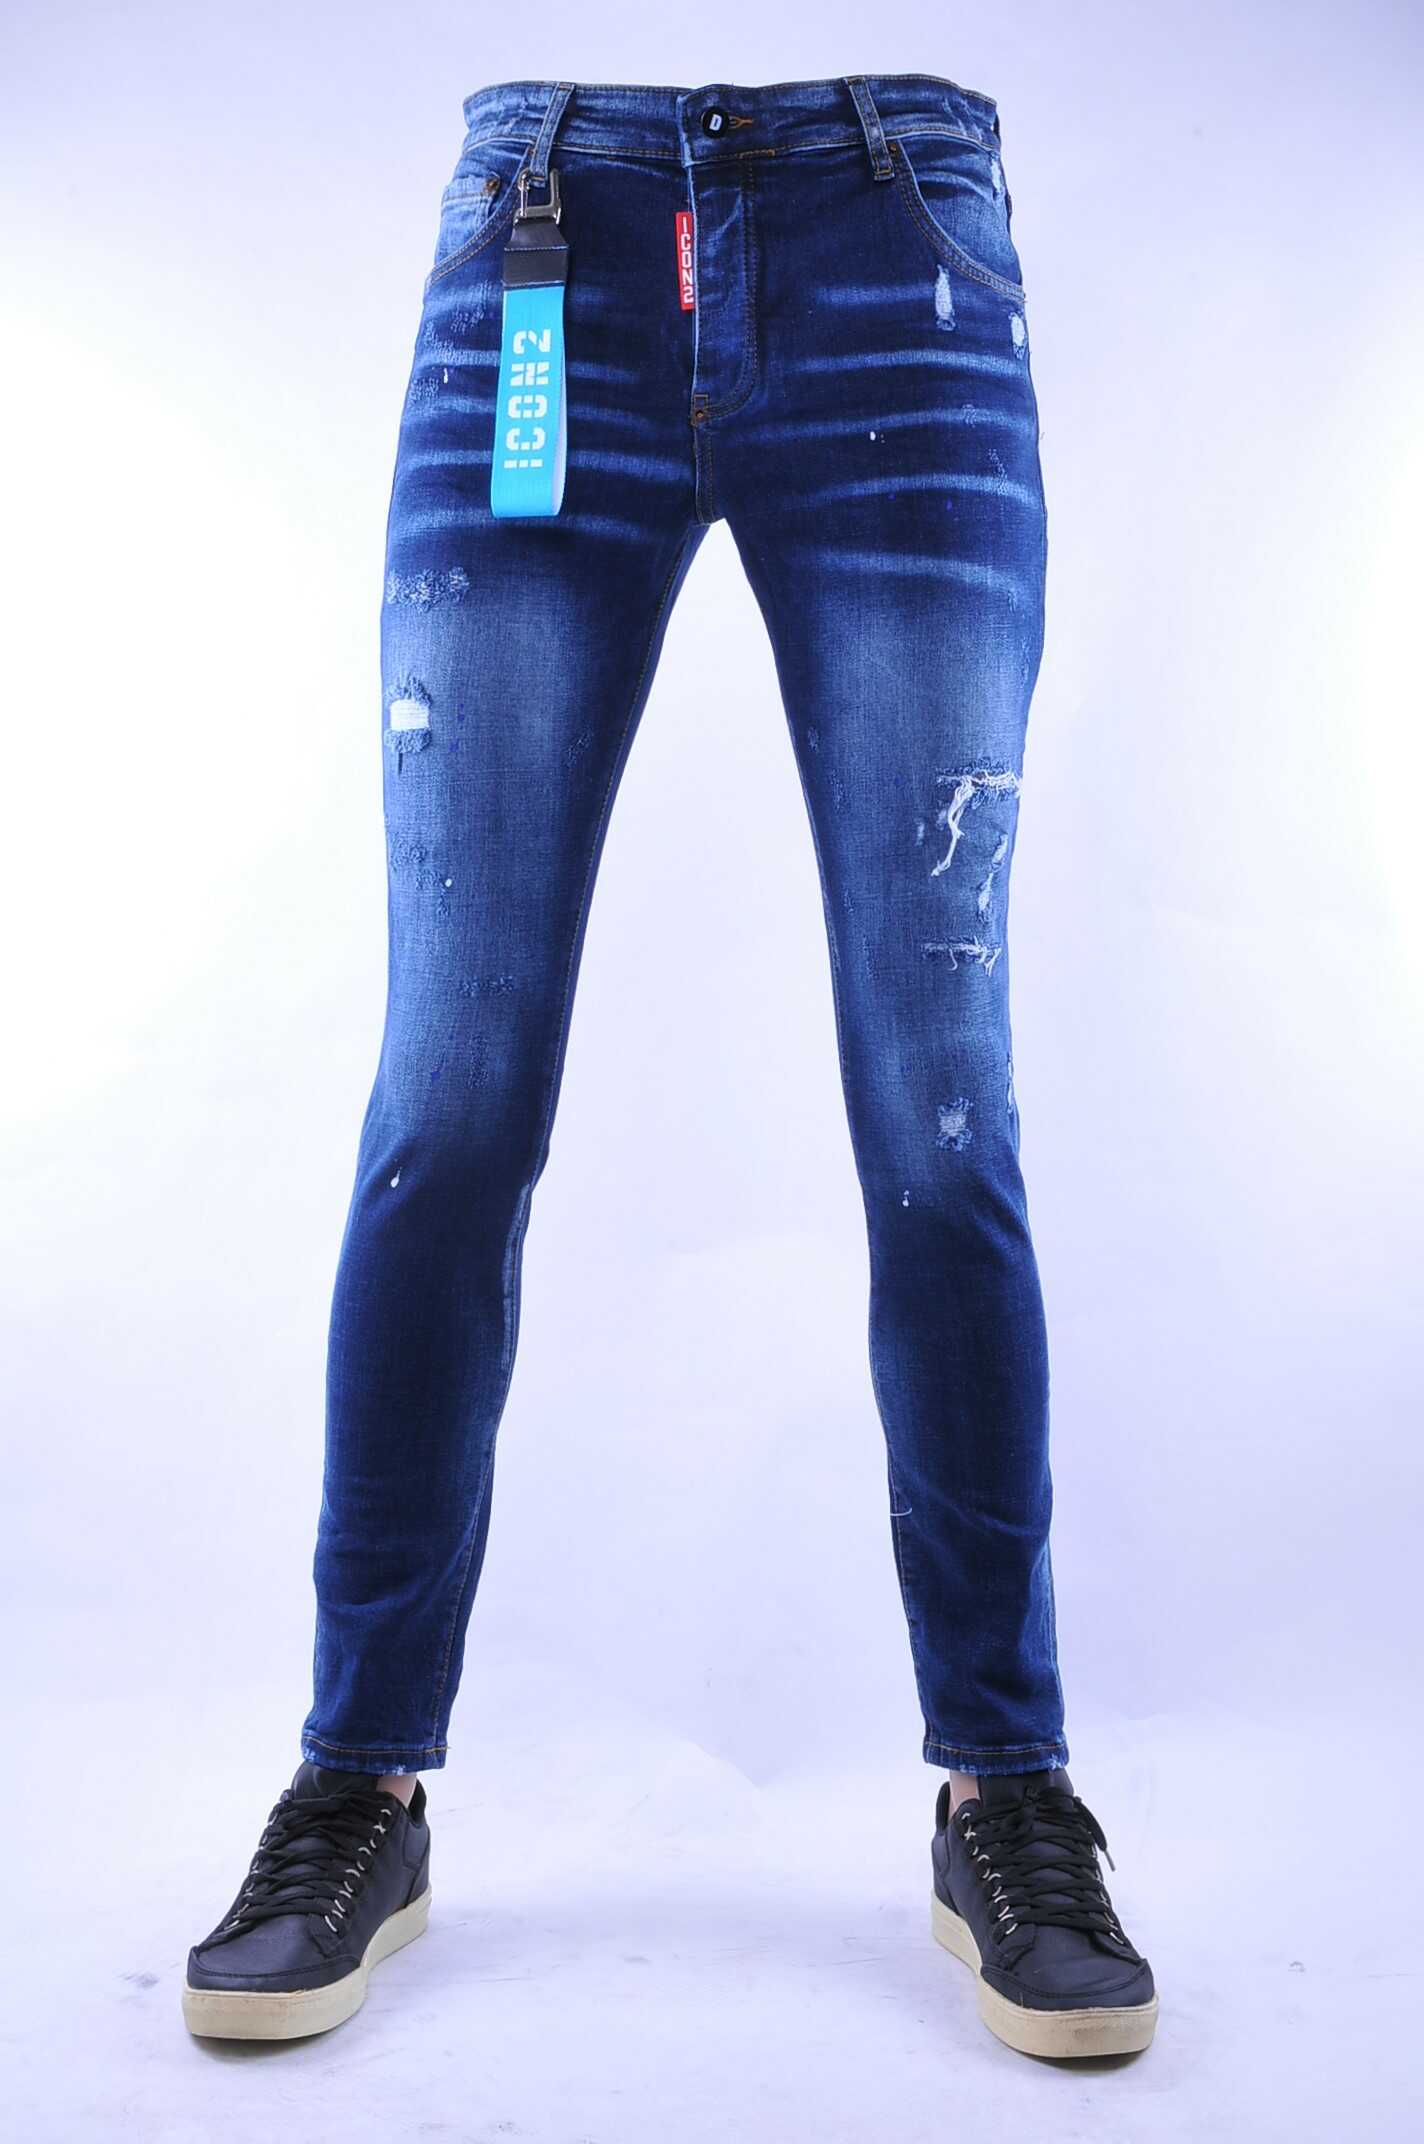 Huiswerk Concurreren Groenteboer ICON2 gescheurde slim fit skinny heren jeans met verfspetters Blauw